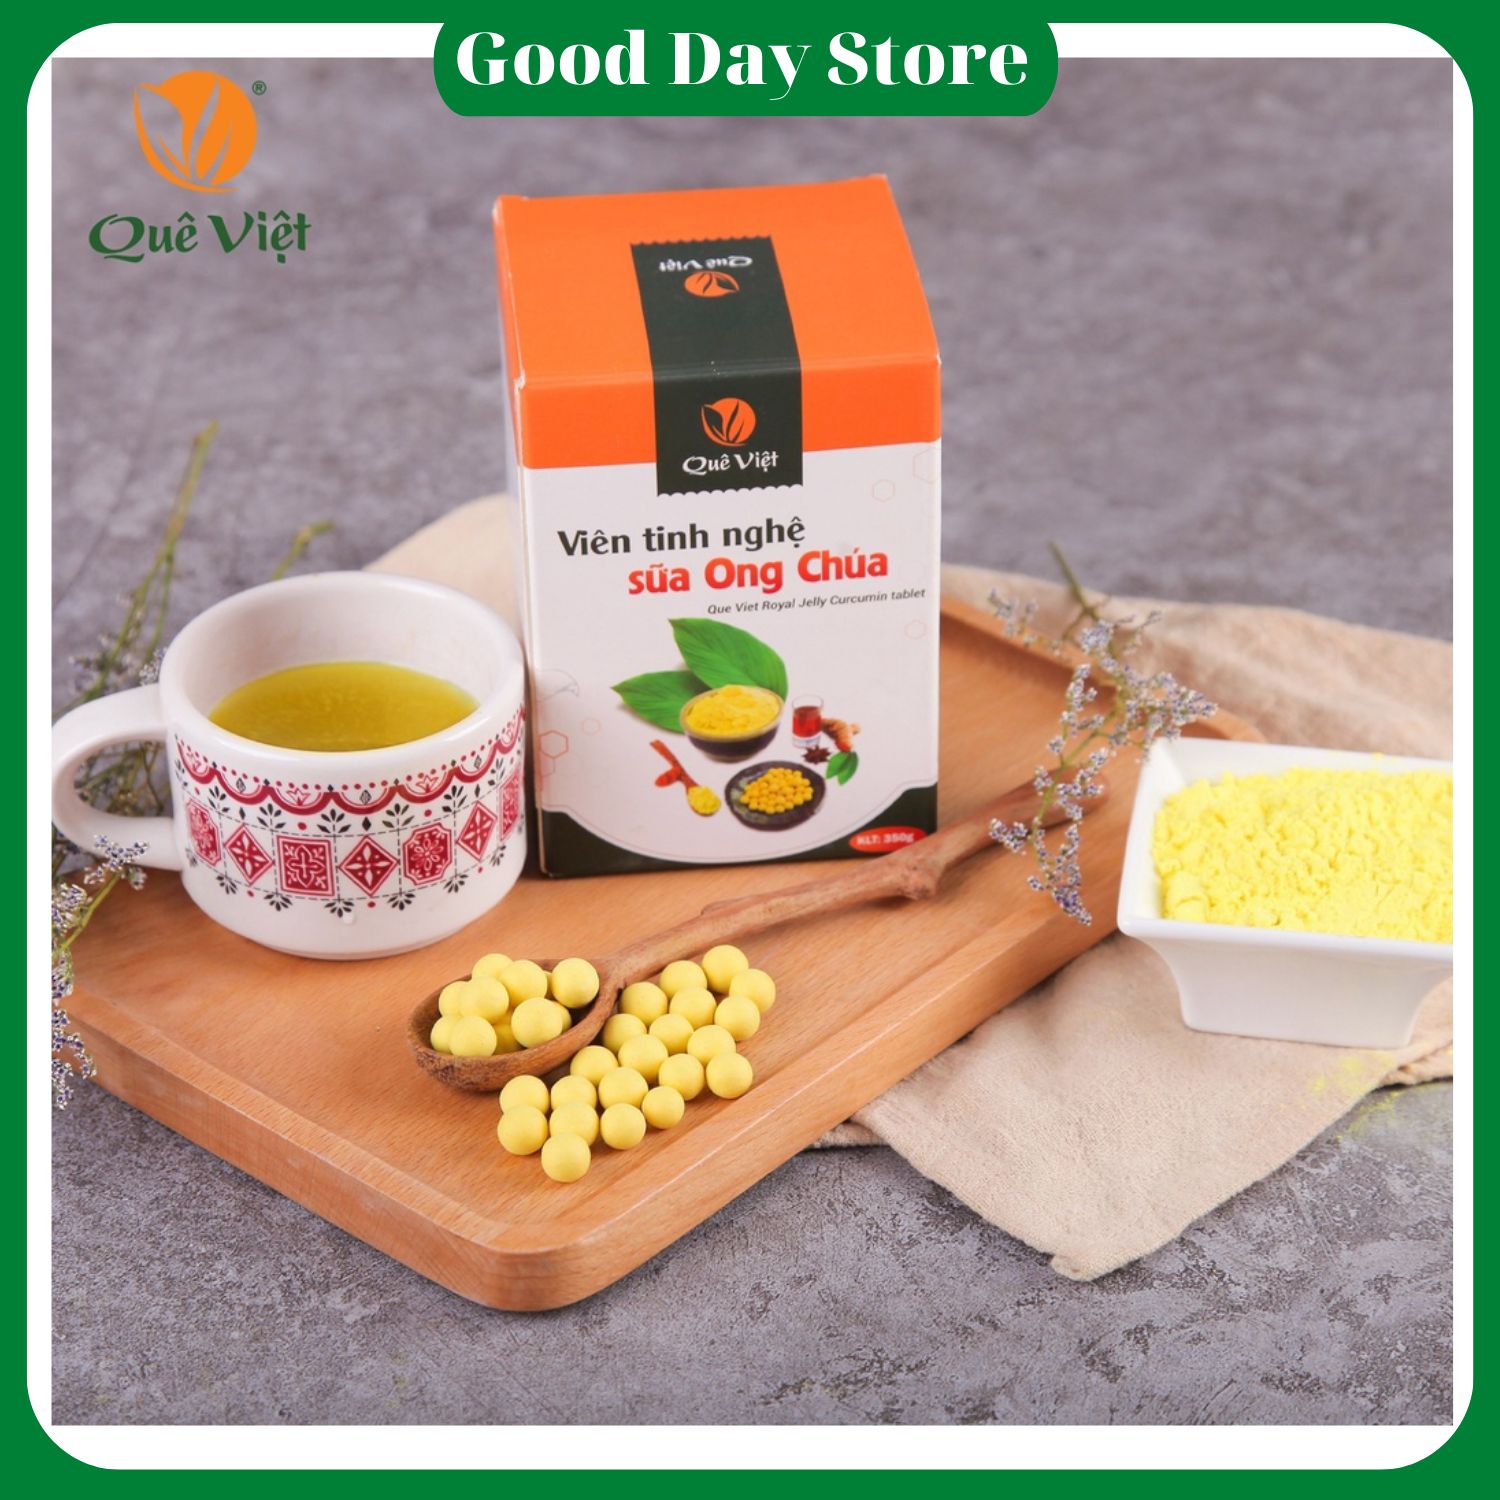 Viên tinh nghệ sữa ong chúa Quê Việt ,tăng cường sức khỏe, làm đẹp da hộp 350 gram - Shop Good Day Store